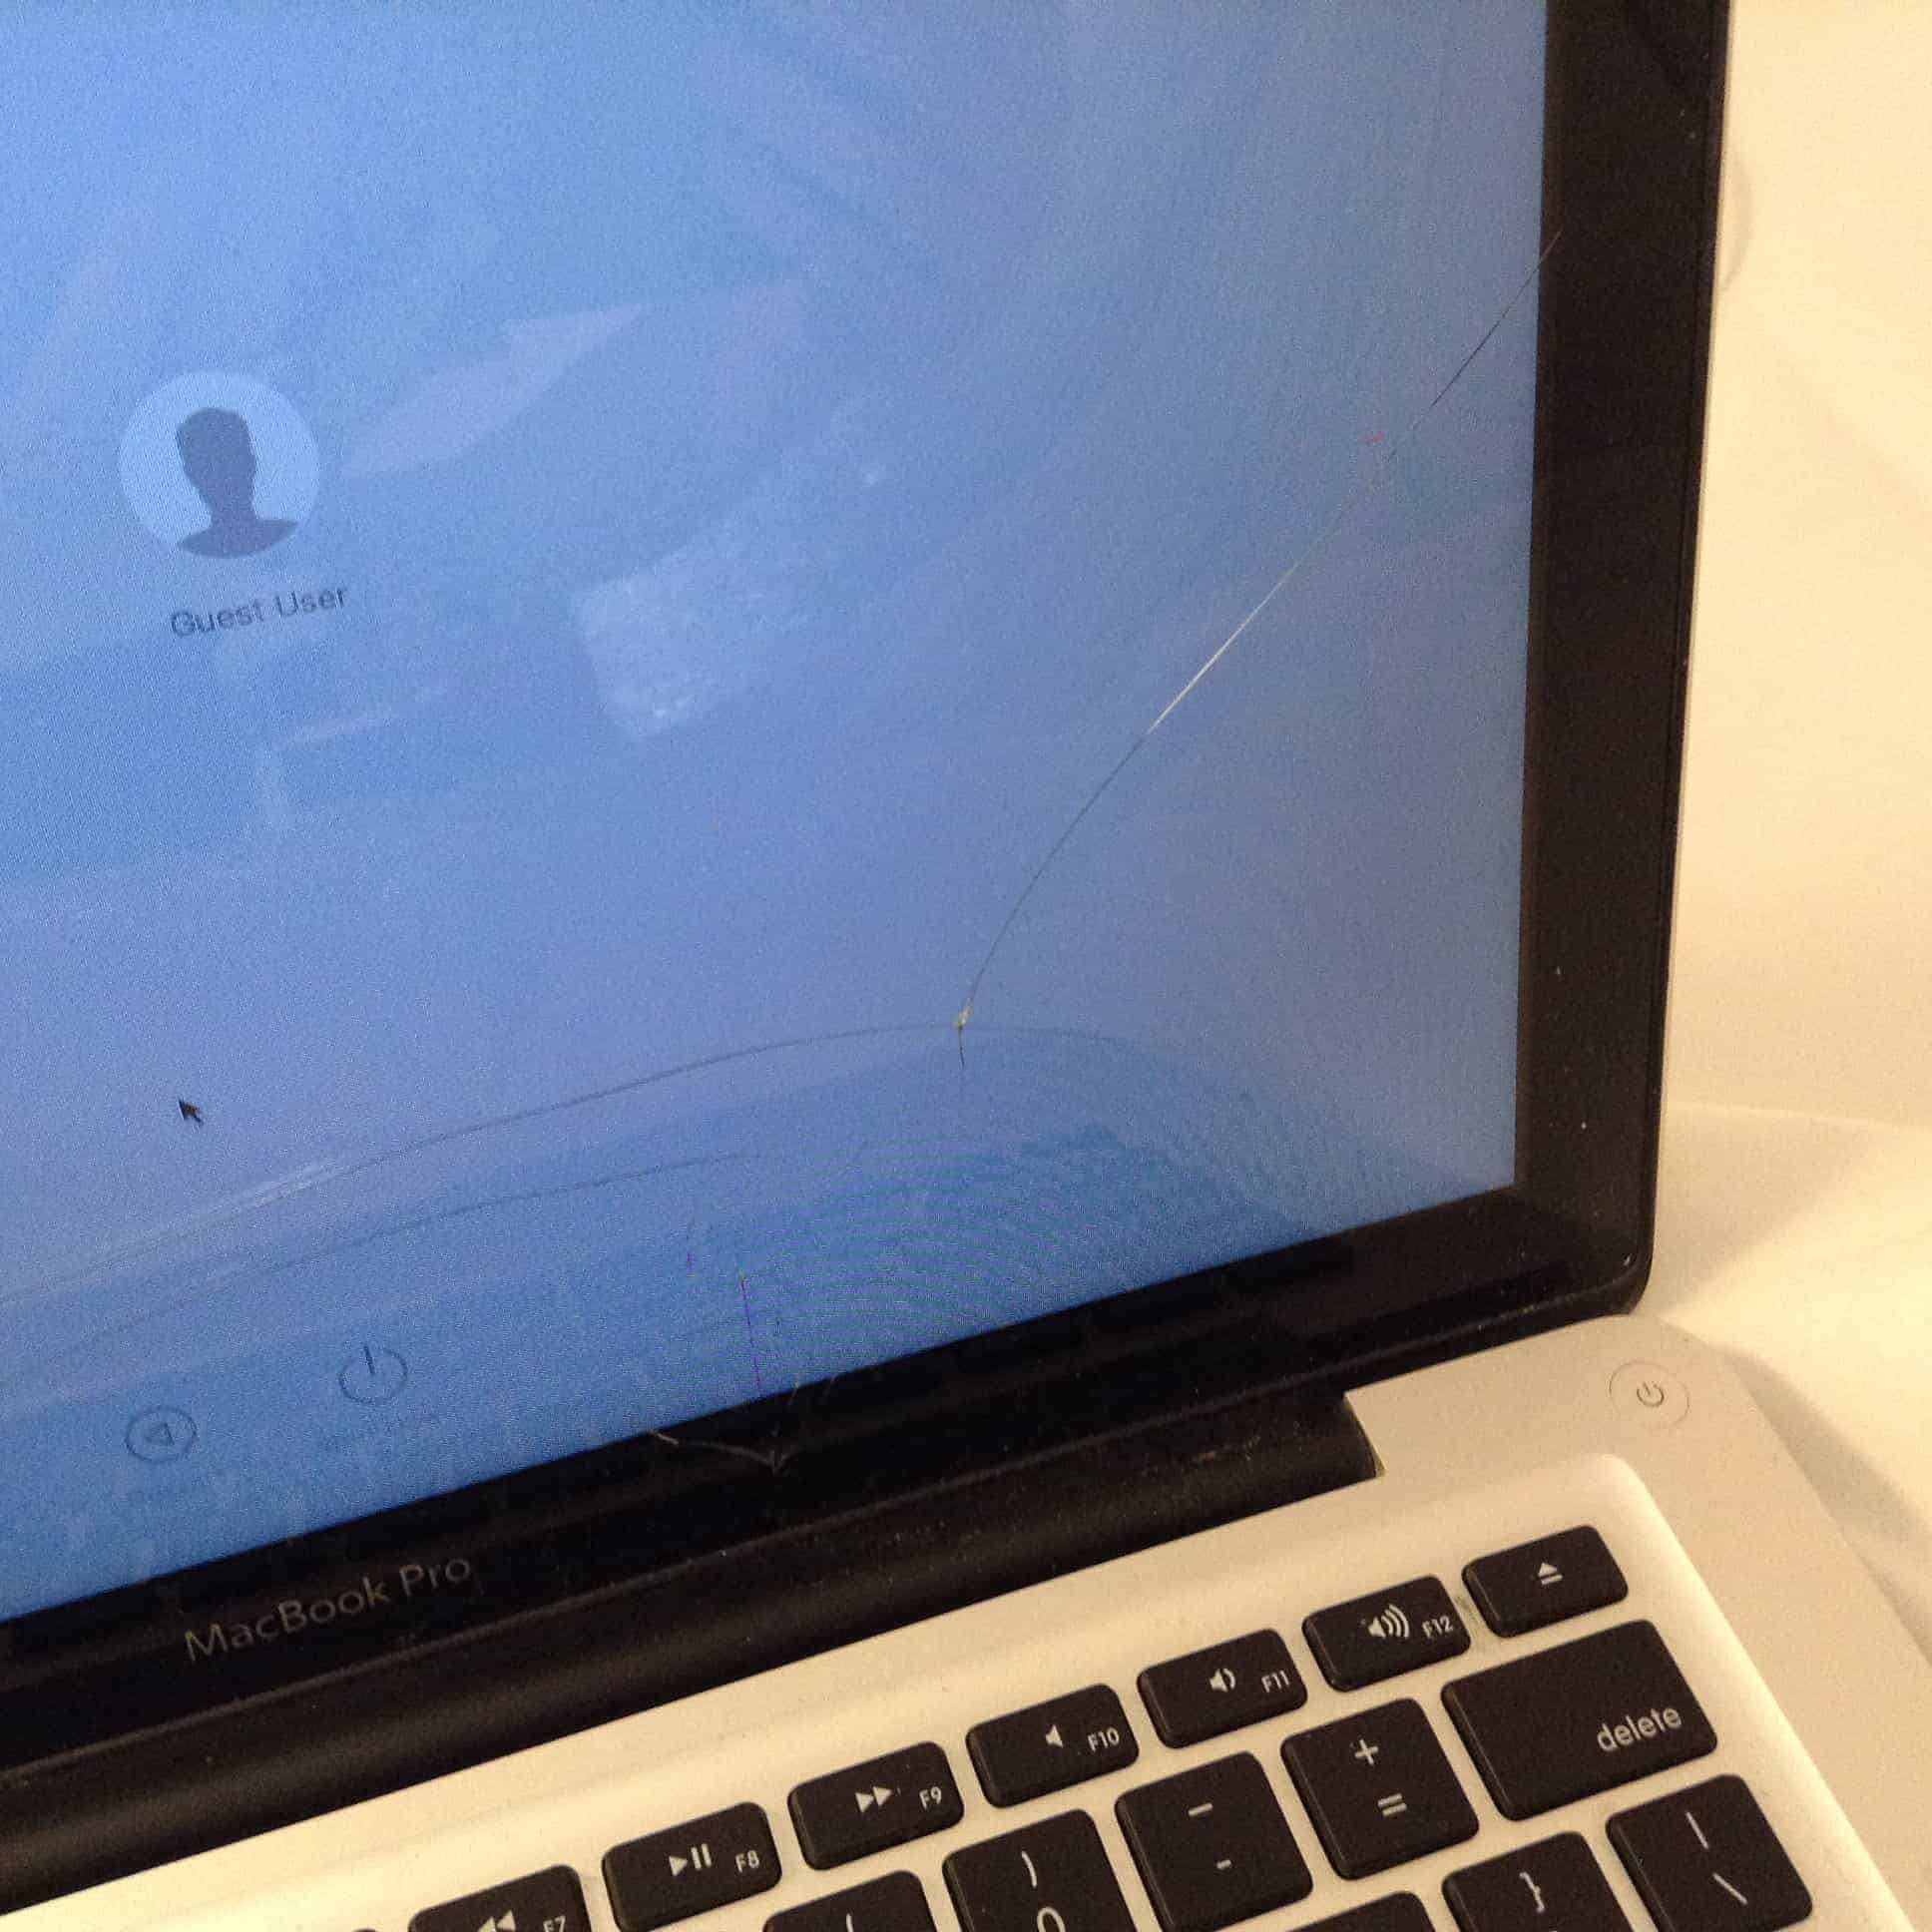 MacBook Pro a1278 broken glass